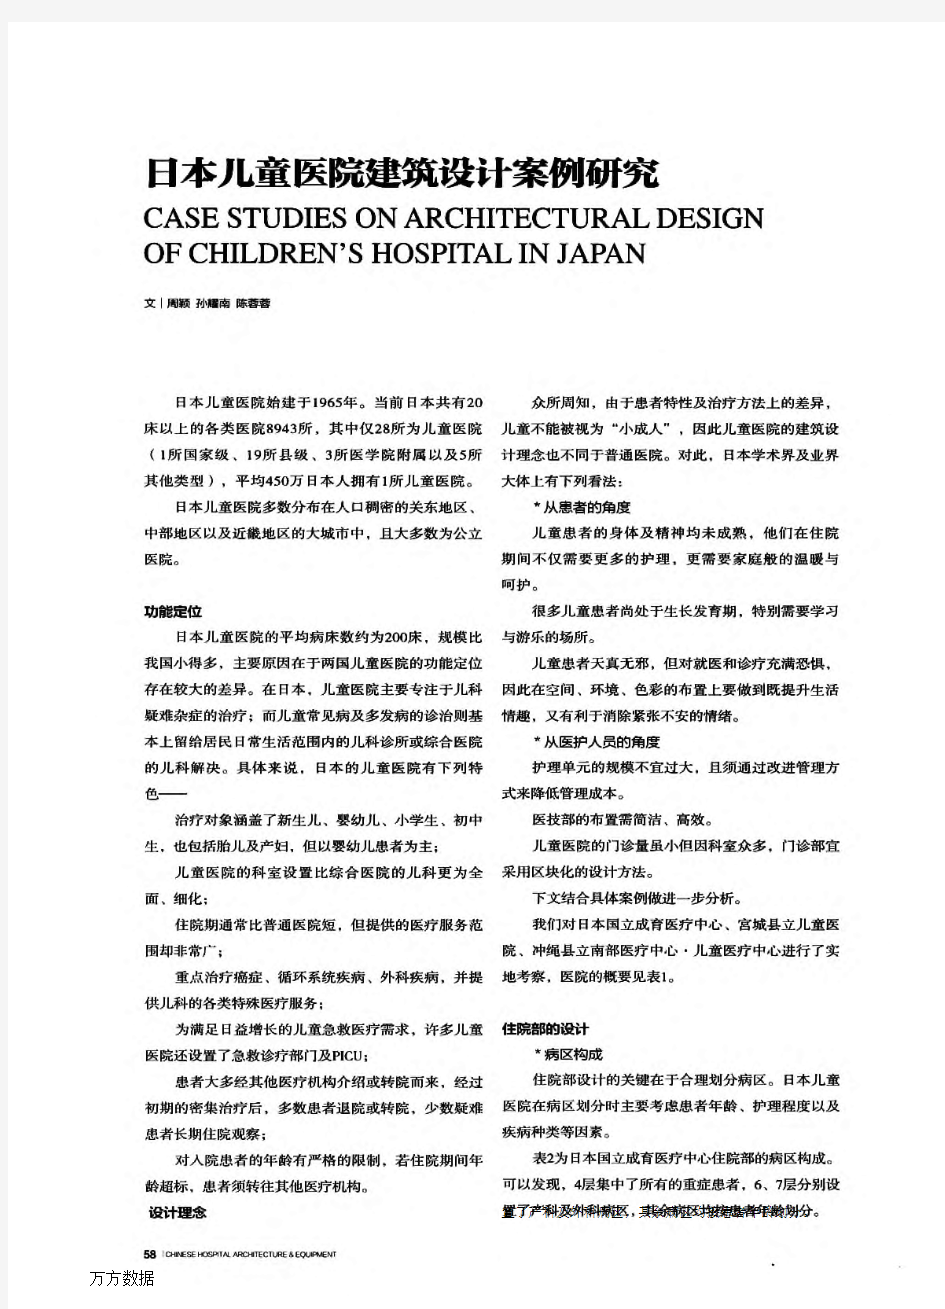 日本儿童医院建筑设计案例研究